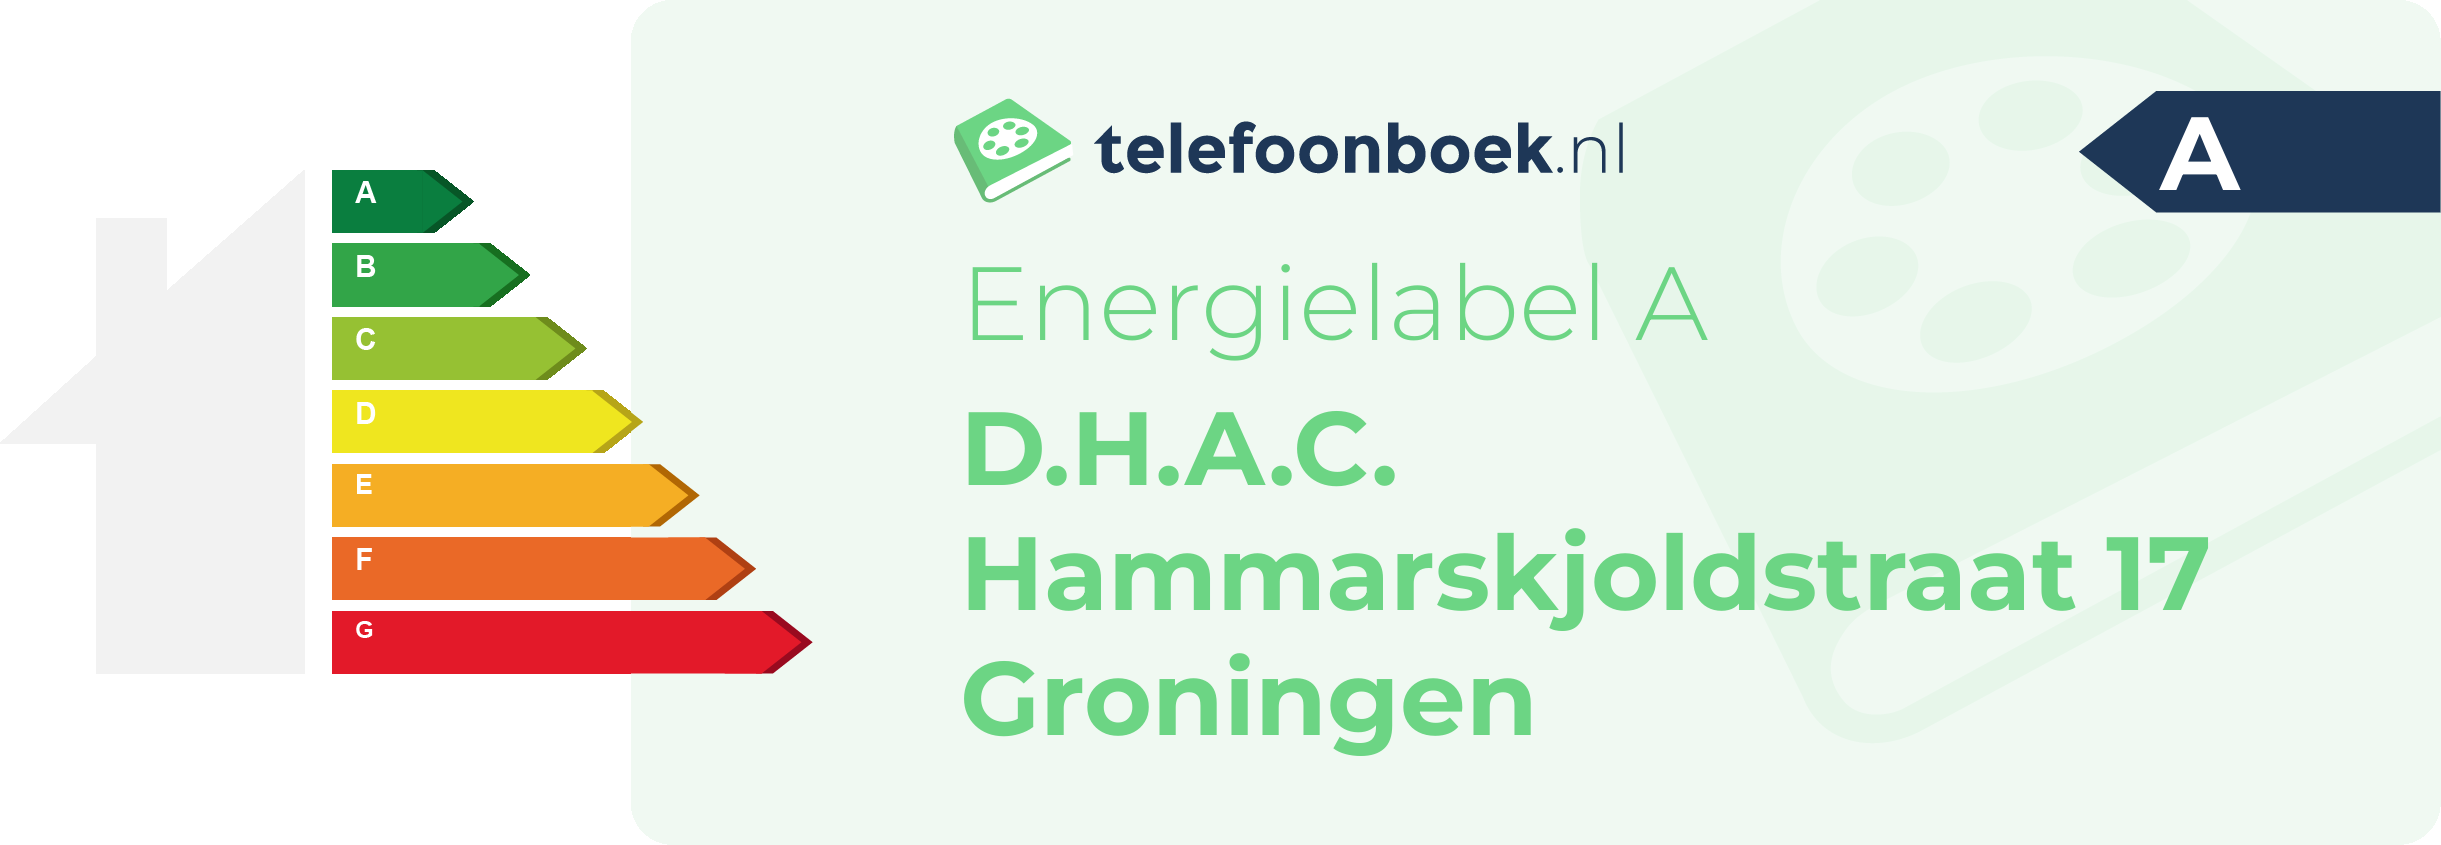 Energielabel D.H.A.C. Hammarskjoldstraat 17 Groningen